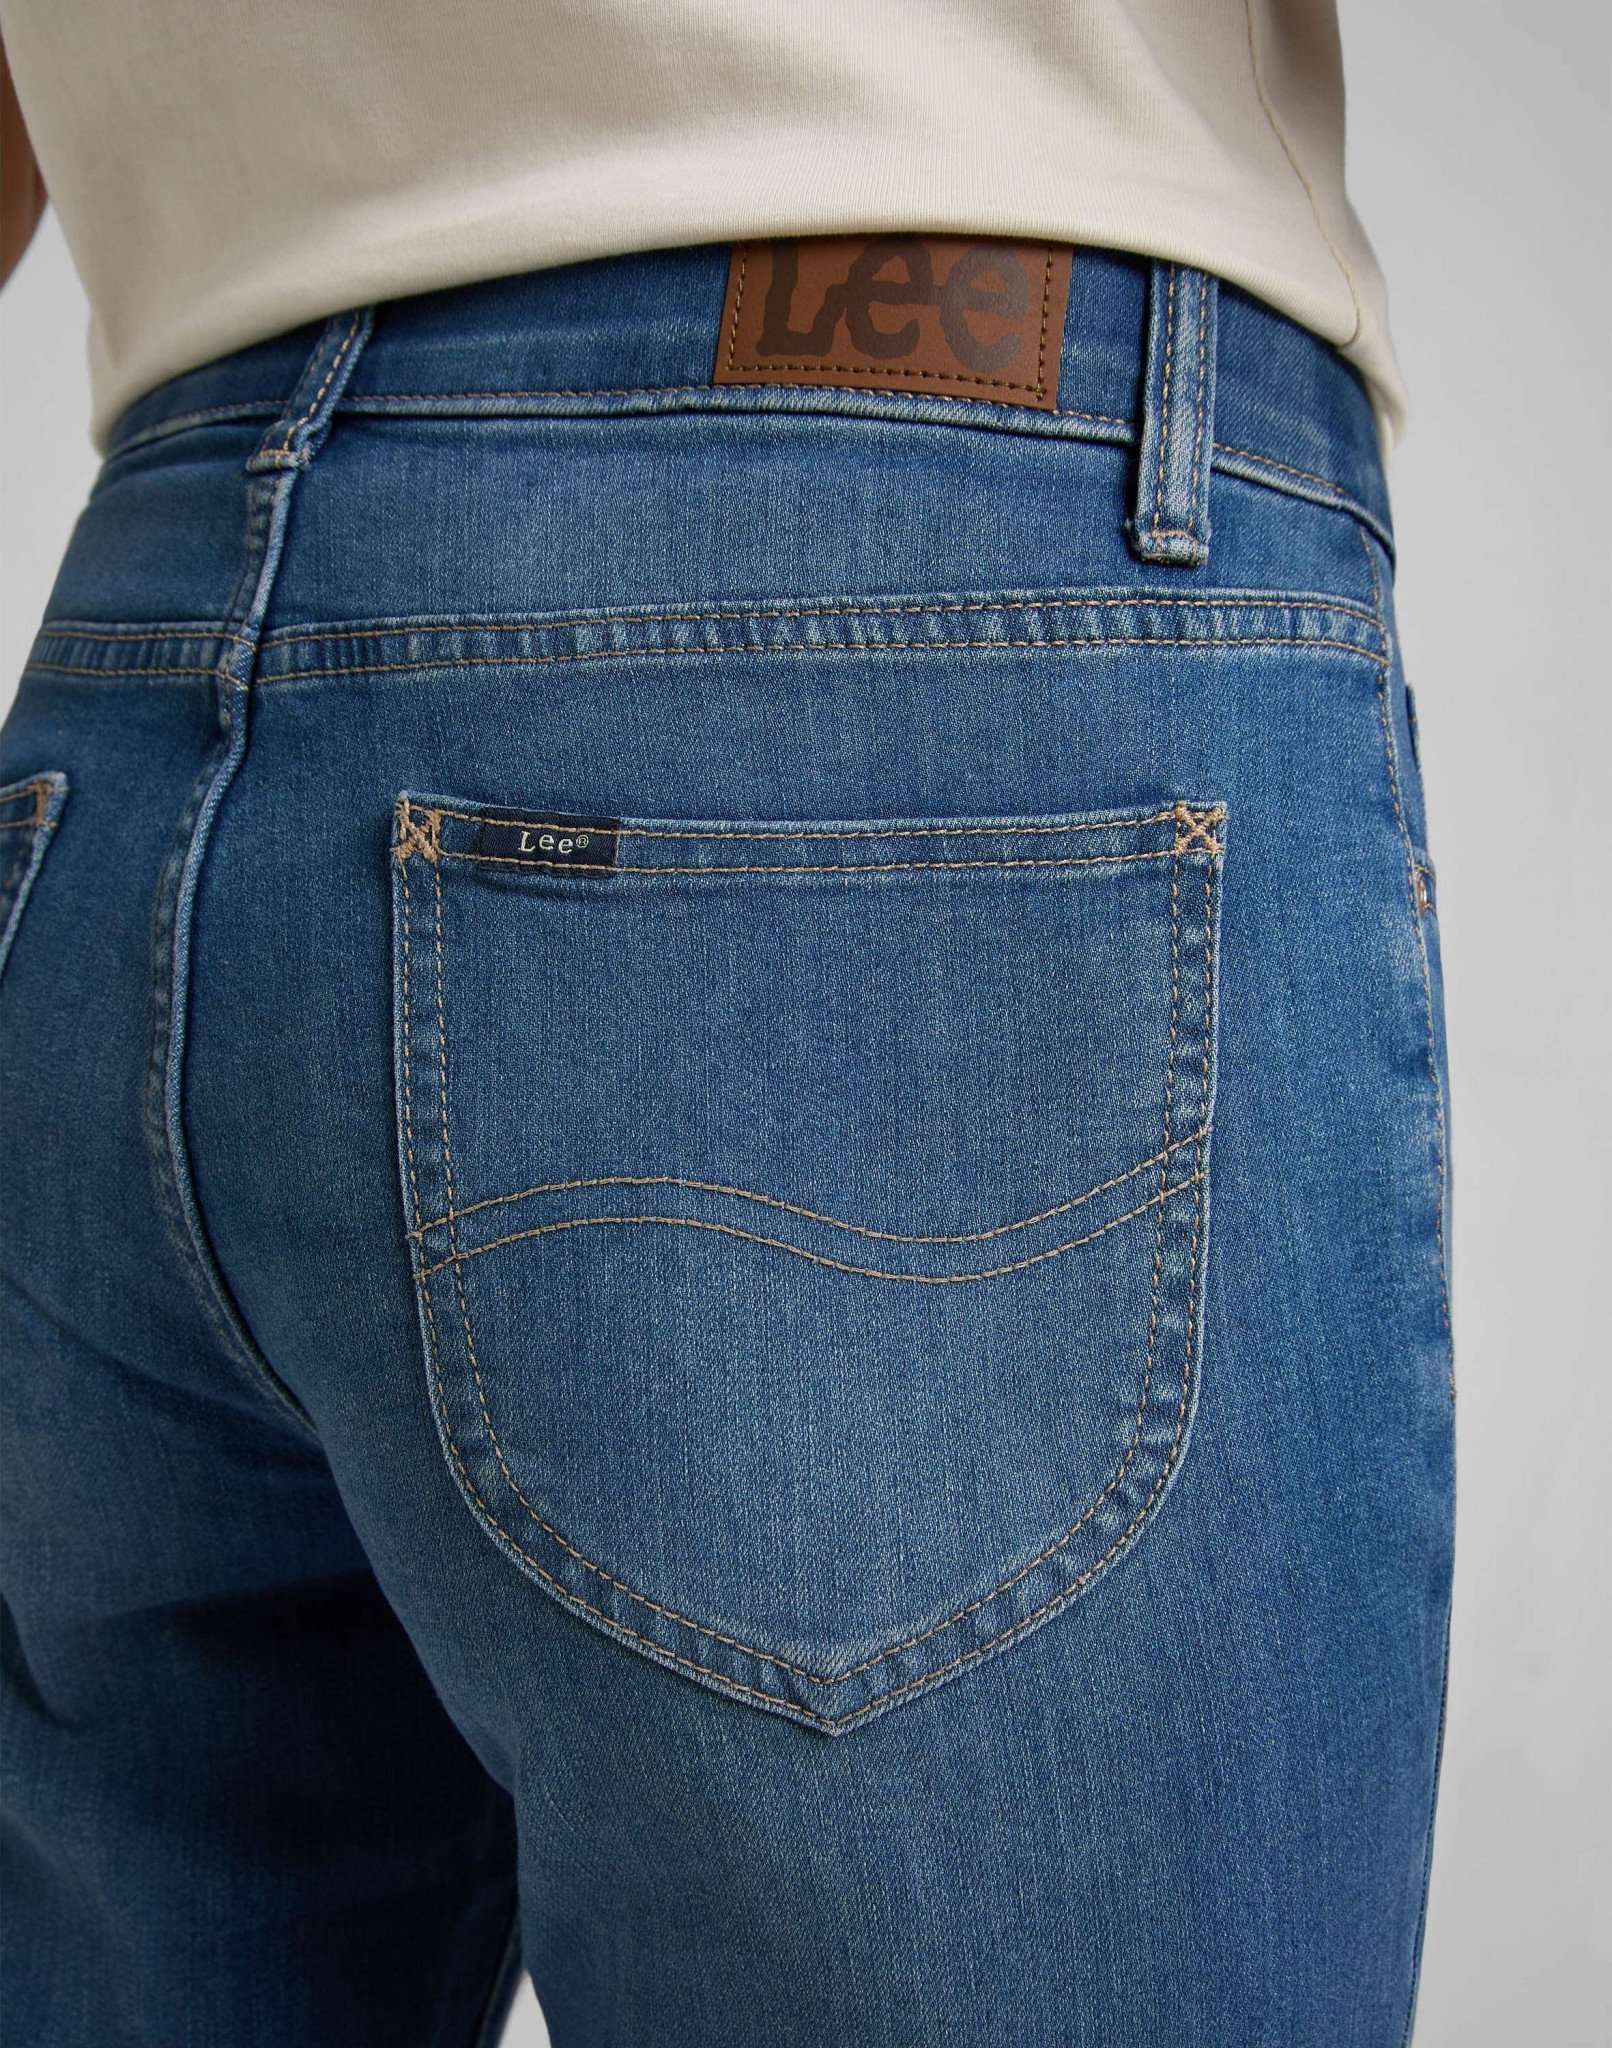 Comfort Straight in Medium Indigo Jeans Lee   